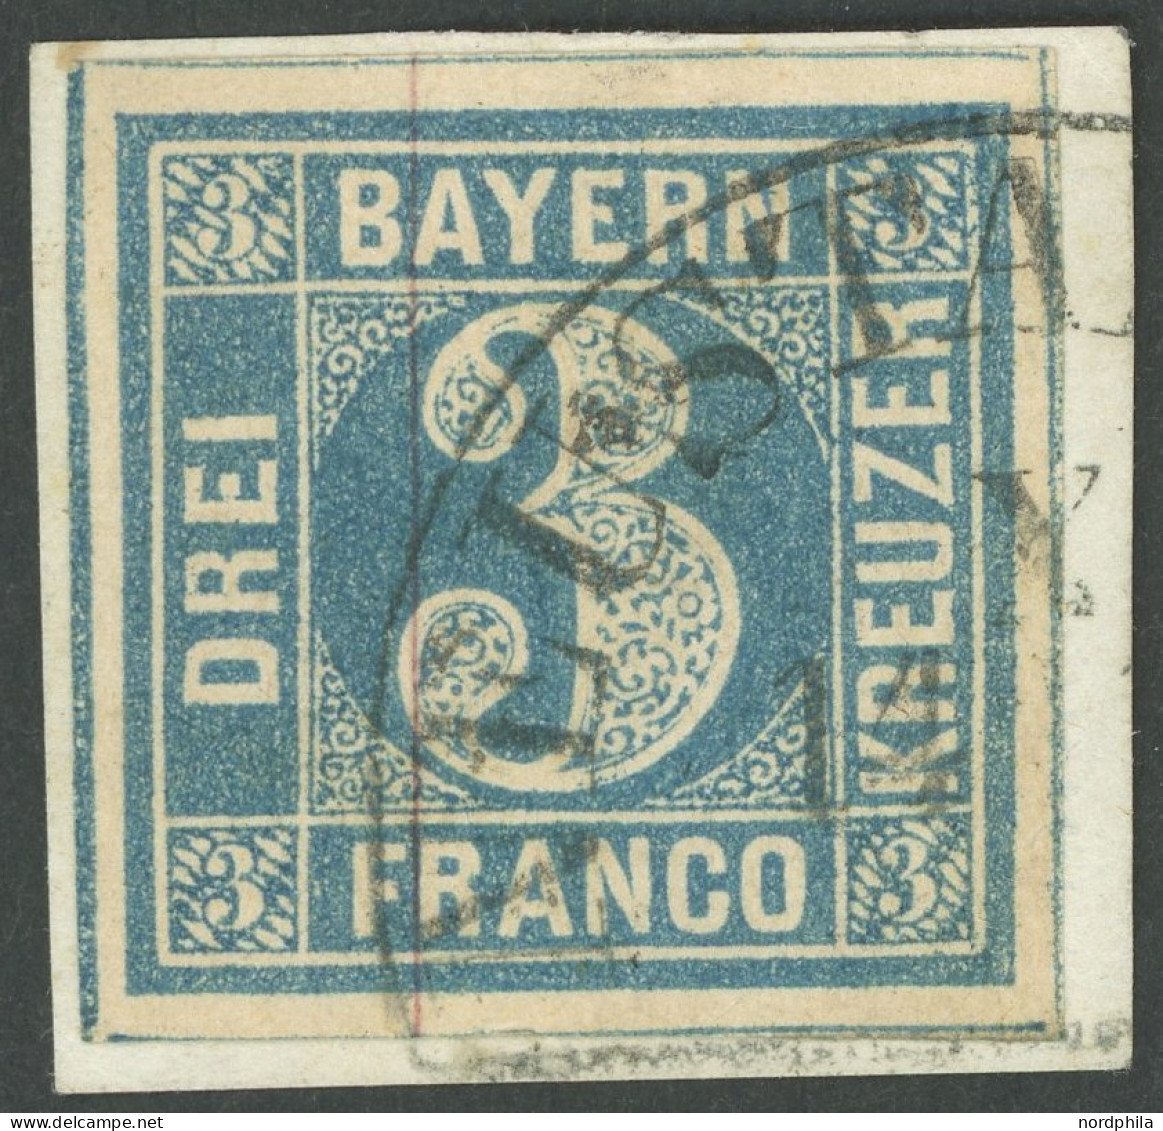 BAYERN 2Ia BrfStk, 1849, 3 Kr. Blau, Type I, Segmentstempel NEUSTADT, Breitrandig, Kabinettstück, Signiert - Gebraucht